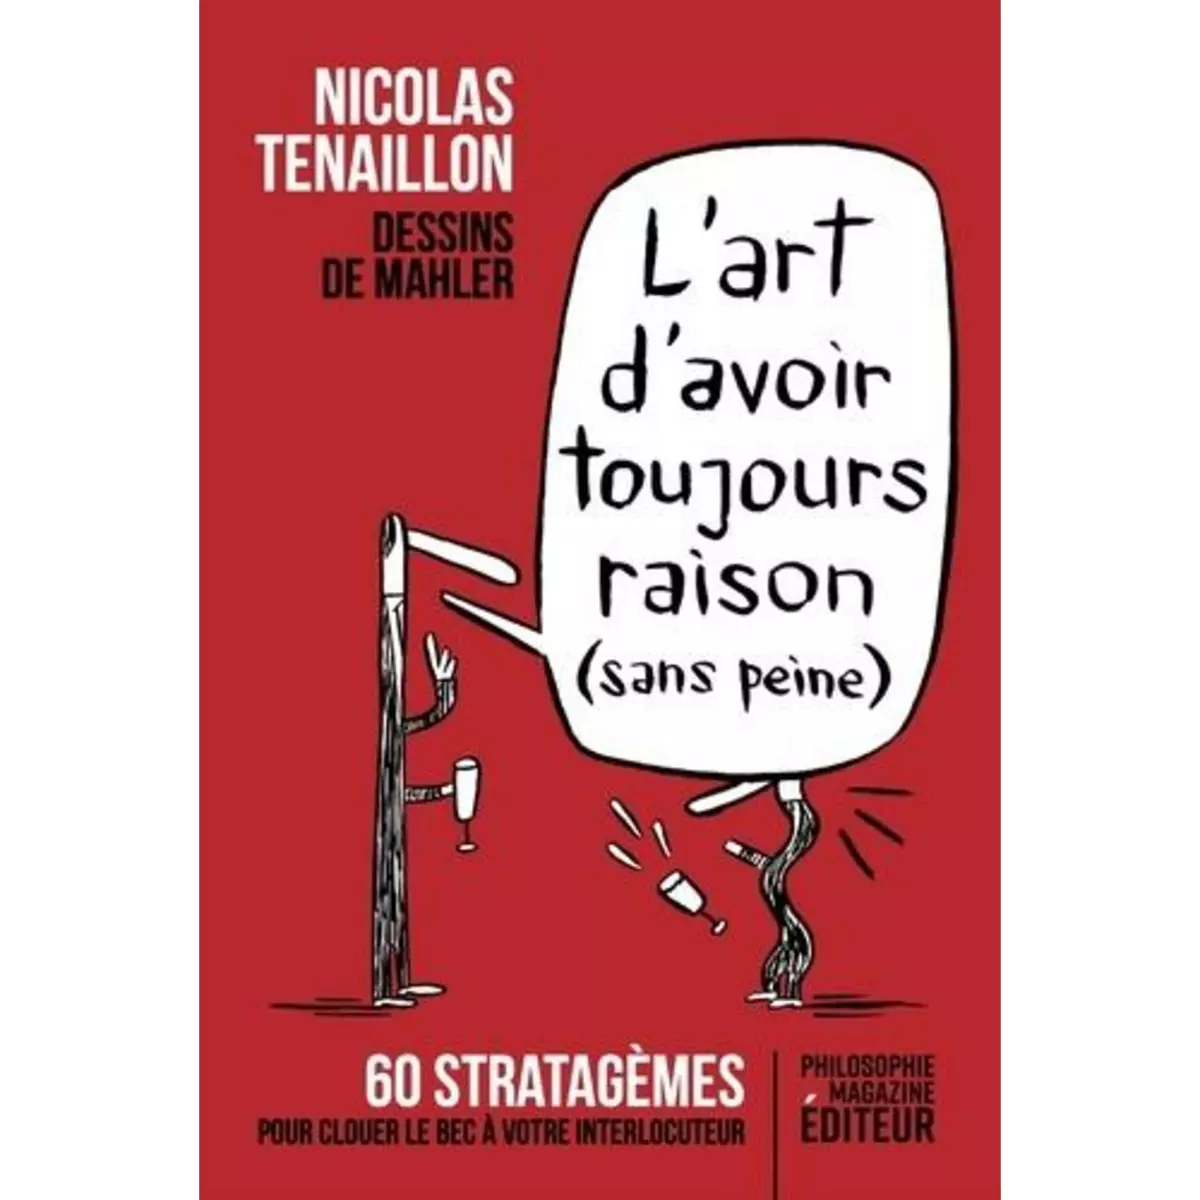  L'ART D'AVOIR TOUJOURS RAISON (SANS PEINE). 60 STRATAGEMES POUR CLOUER LE BEC A VOTRE INTERLOCUTEUR, Tenaillon Nicolas